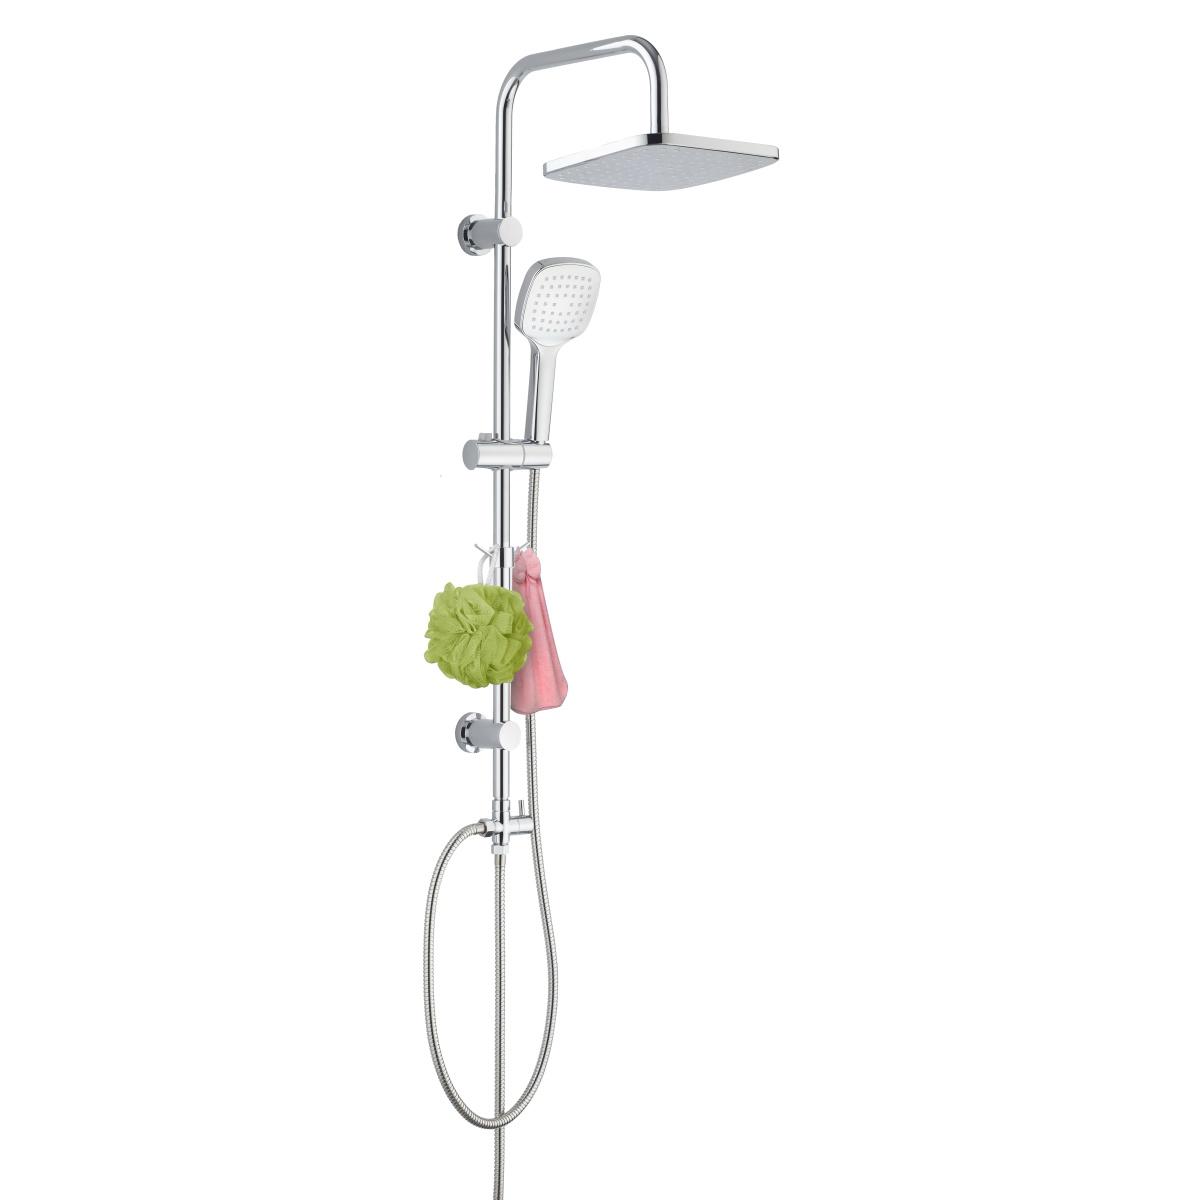 YS34159 Zuhanyoszlop, esőzuhanyoszlop öntisztító zuhanykészlettel, kampóval;